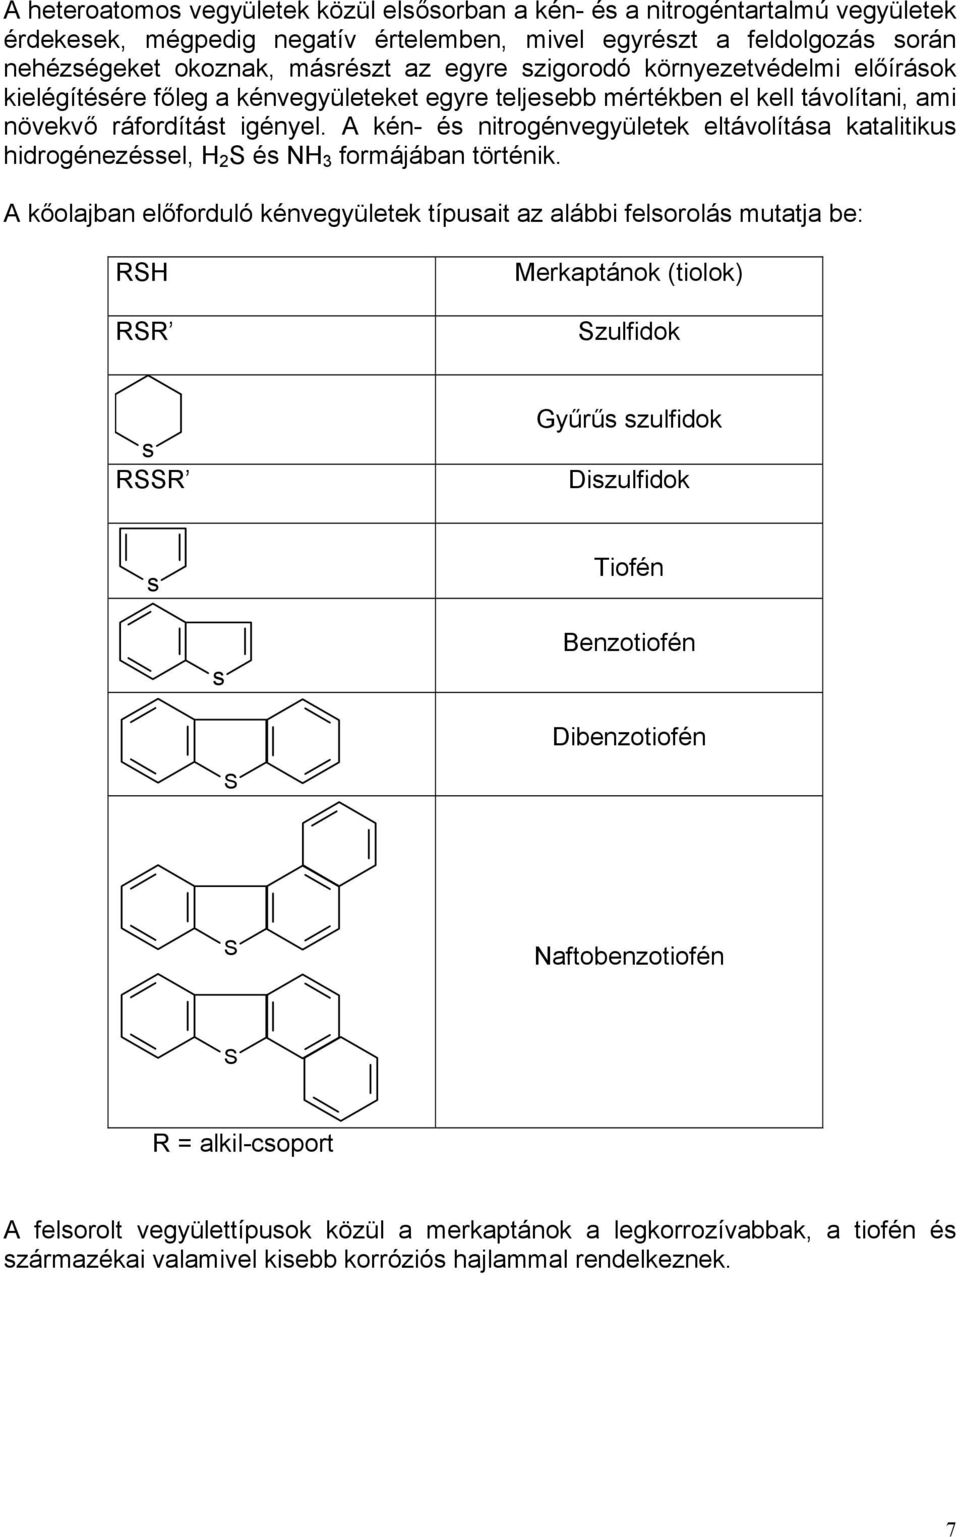 A kén- és nitrogénvegyületek eltávolítása katalitikus hidrogénezéssel, H 2 S és NH 3 formájában történik.